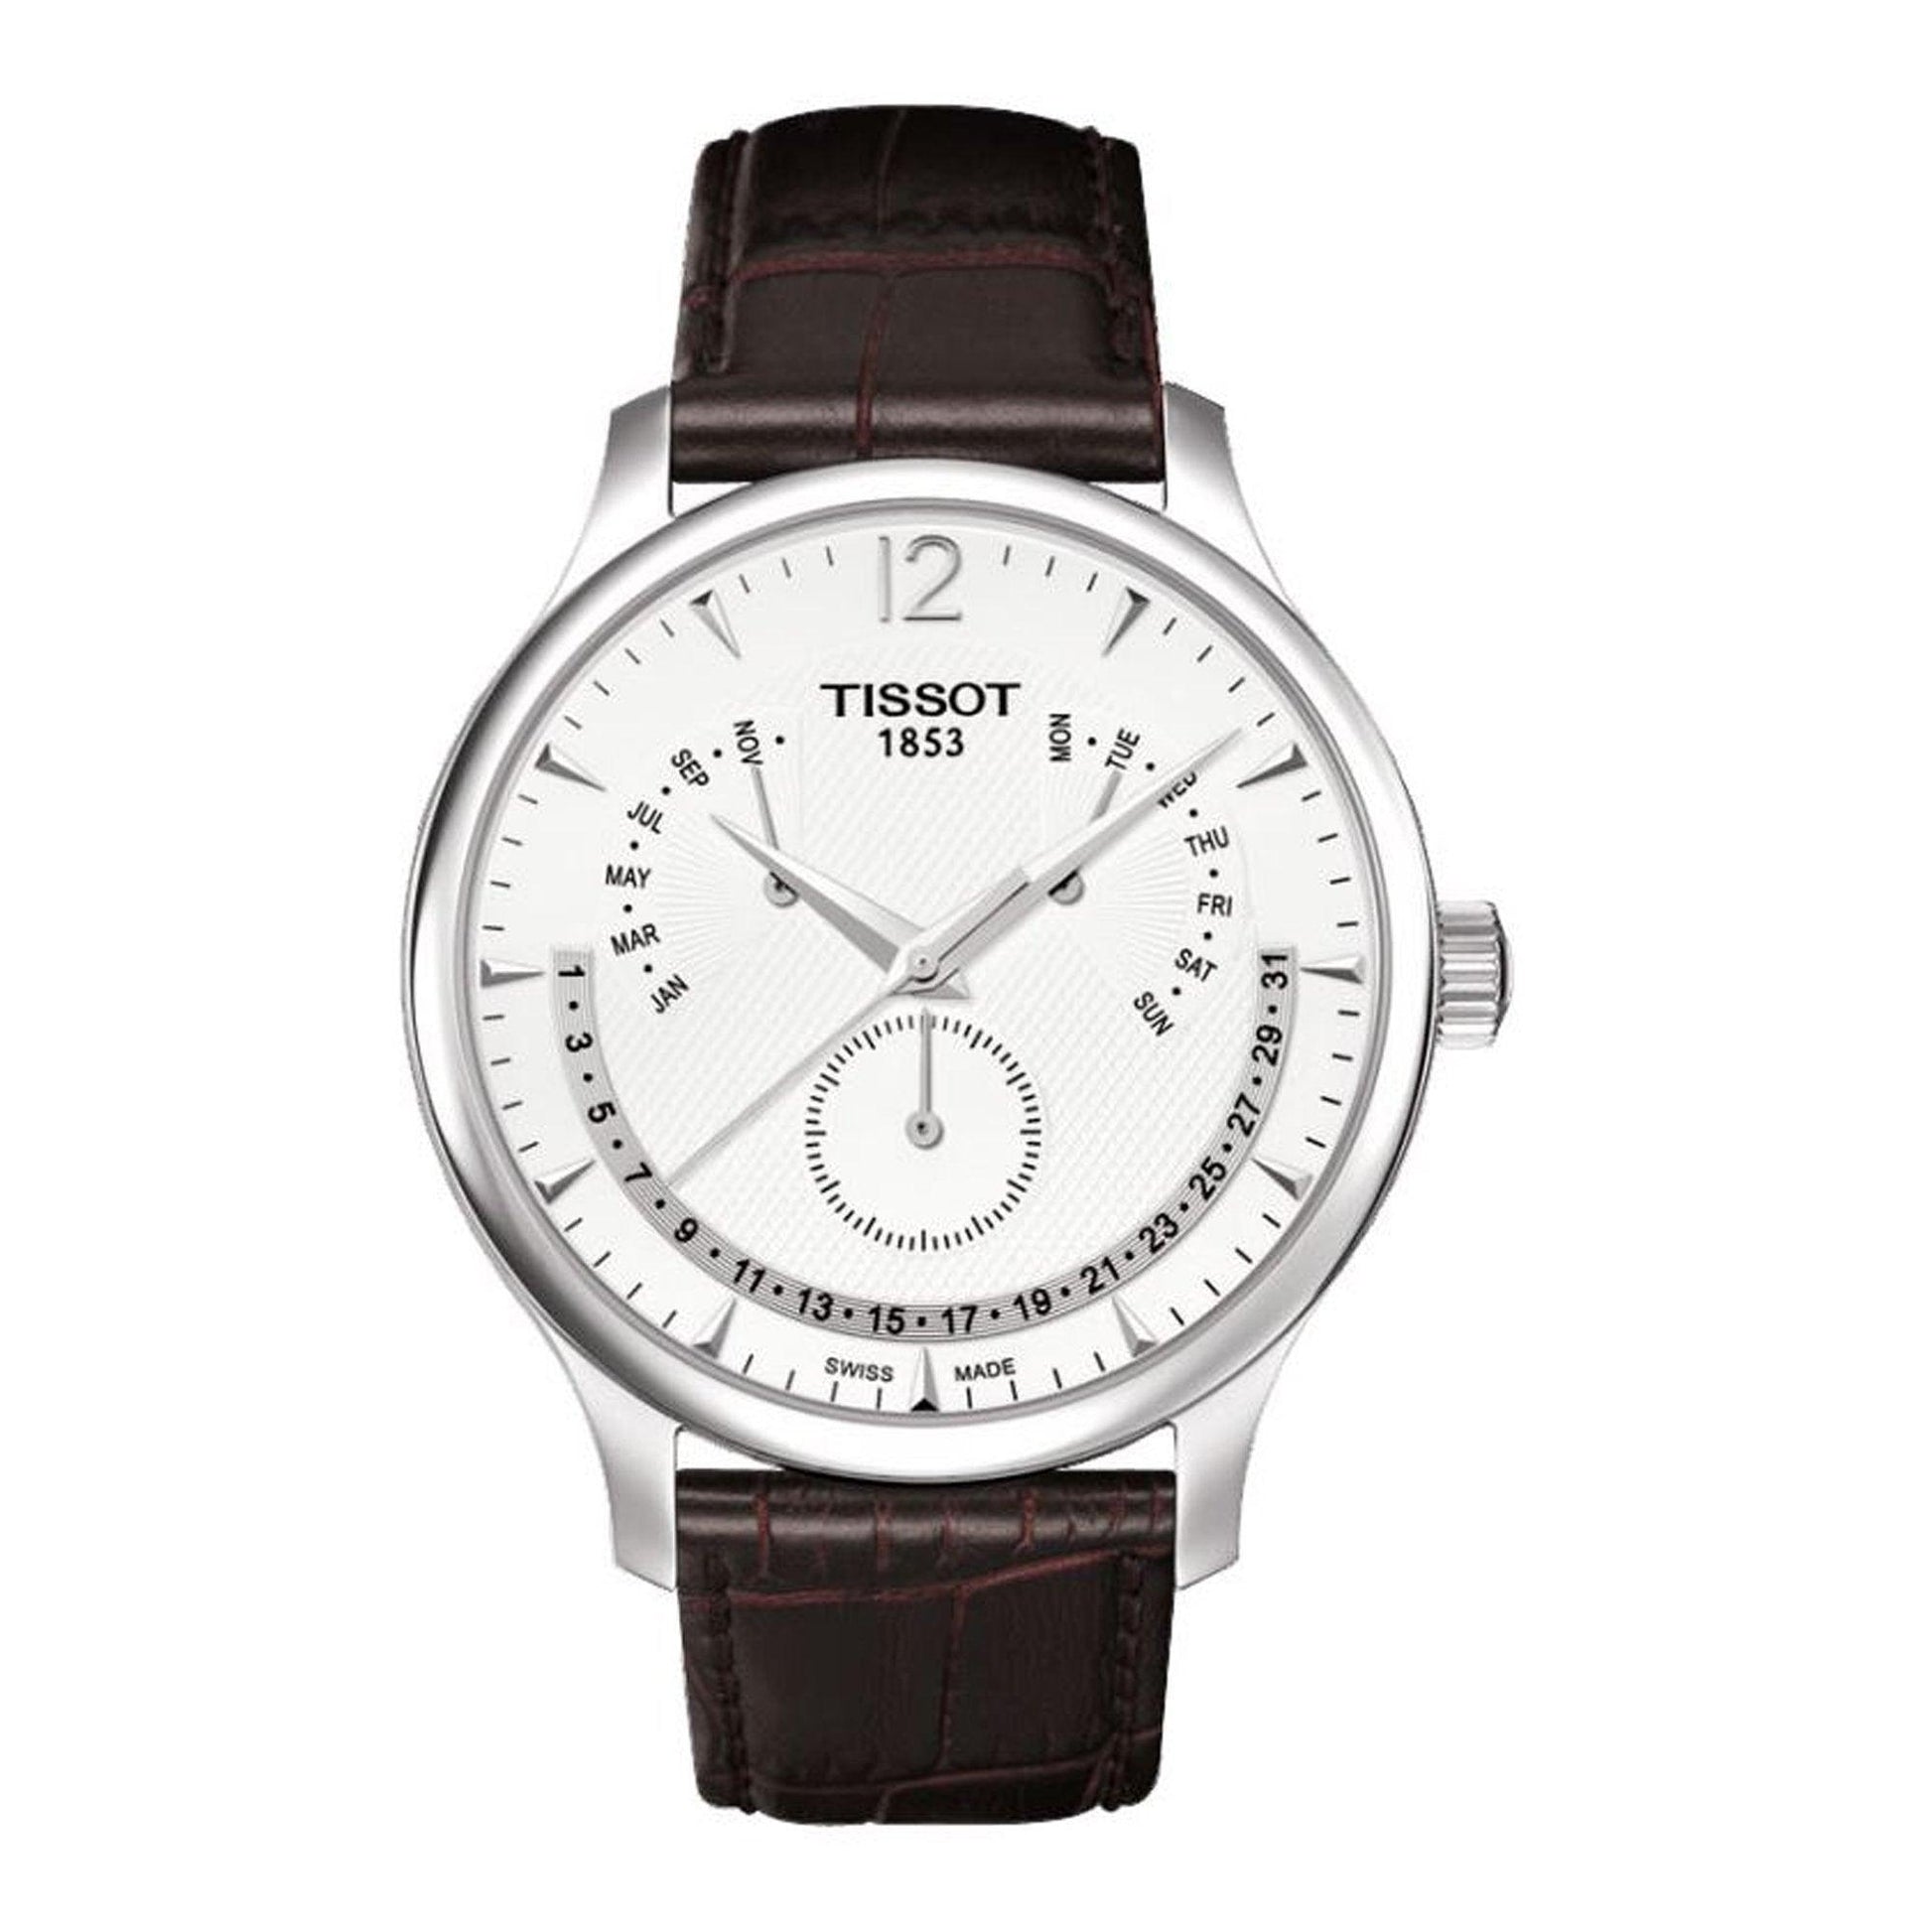 Tissot TRADITION PERPETUAL CALENDAR T063.637.16.037.00 orologio uomo al quarzo - Kechiq Concept Boutique